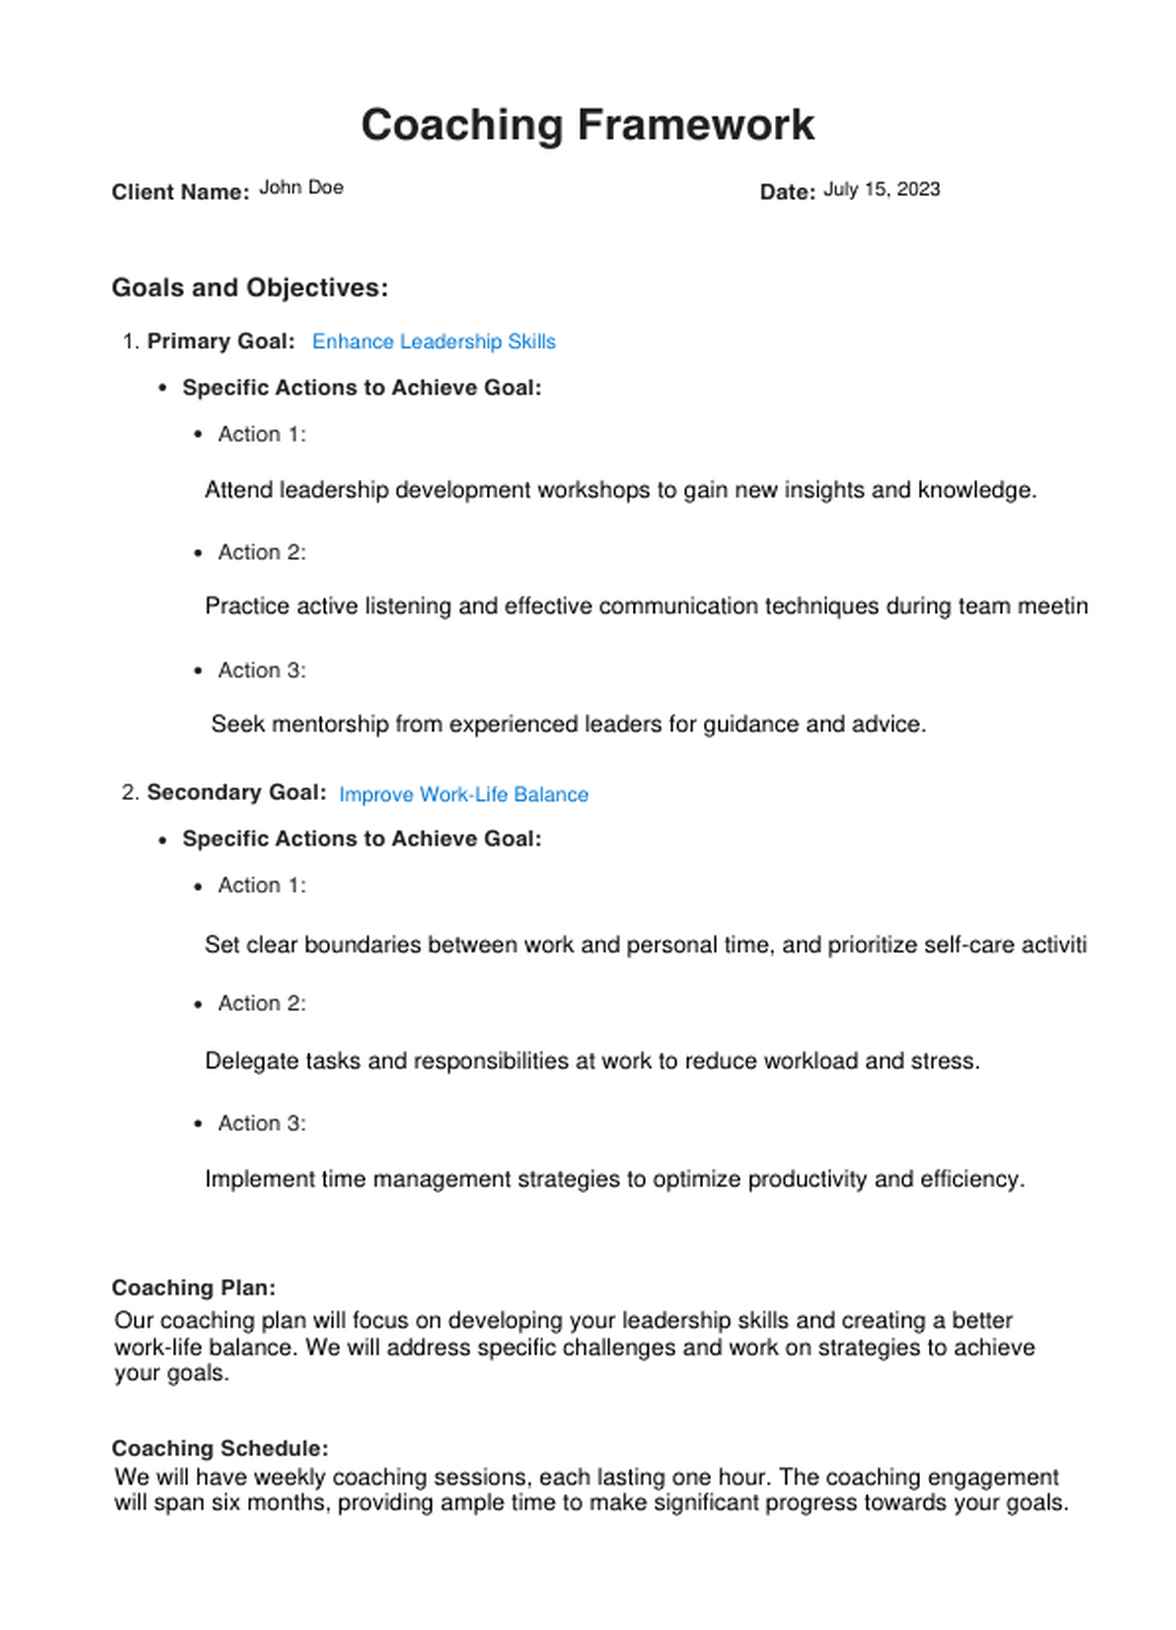 Coaching Framework PDF Example